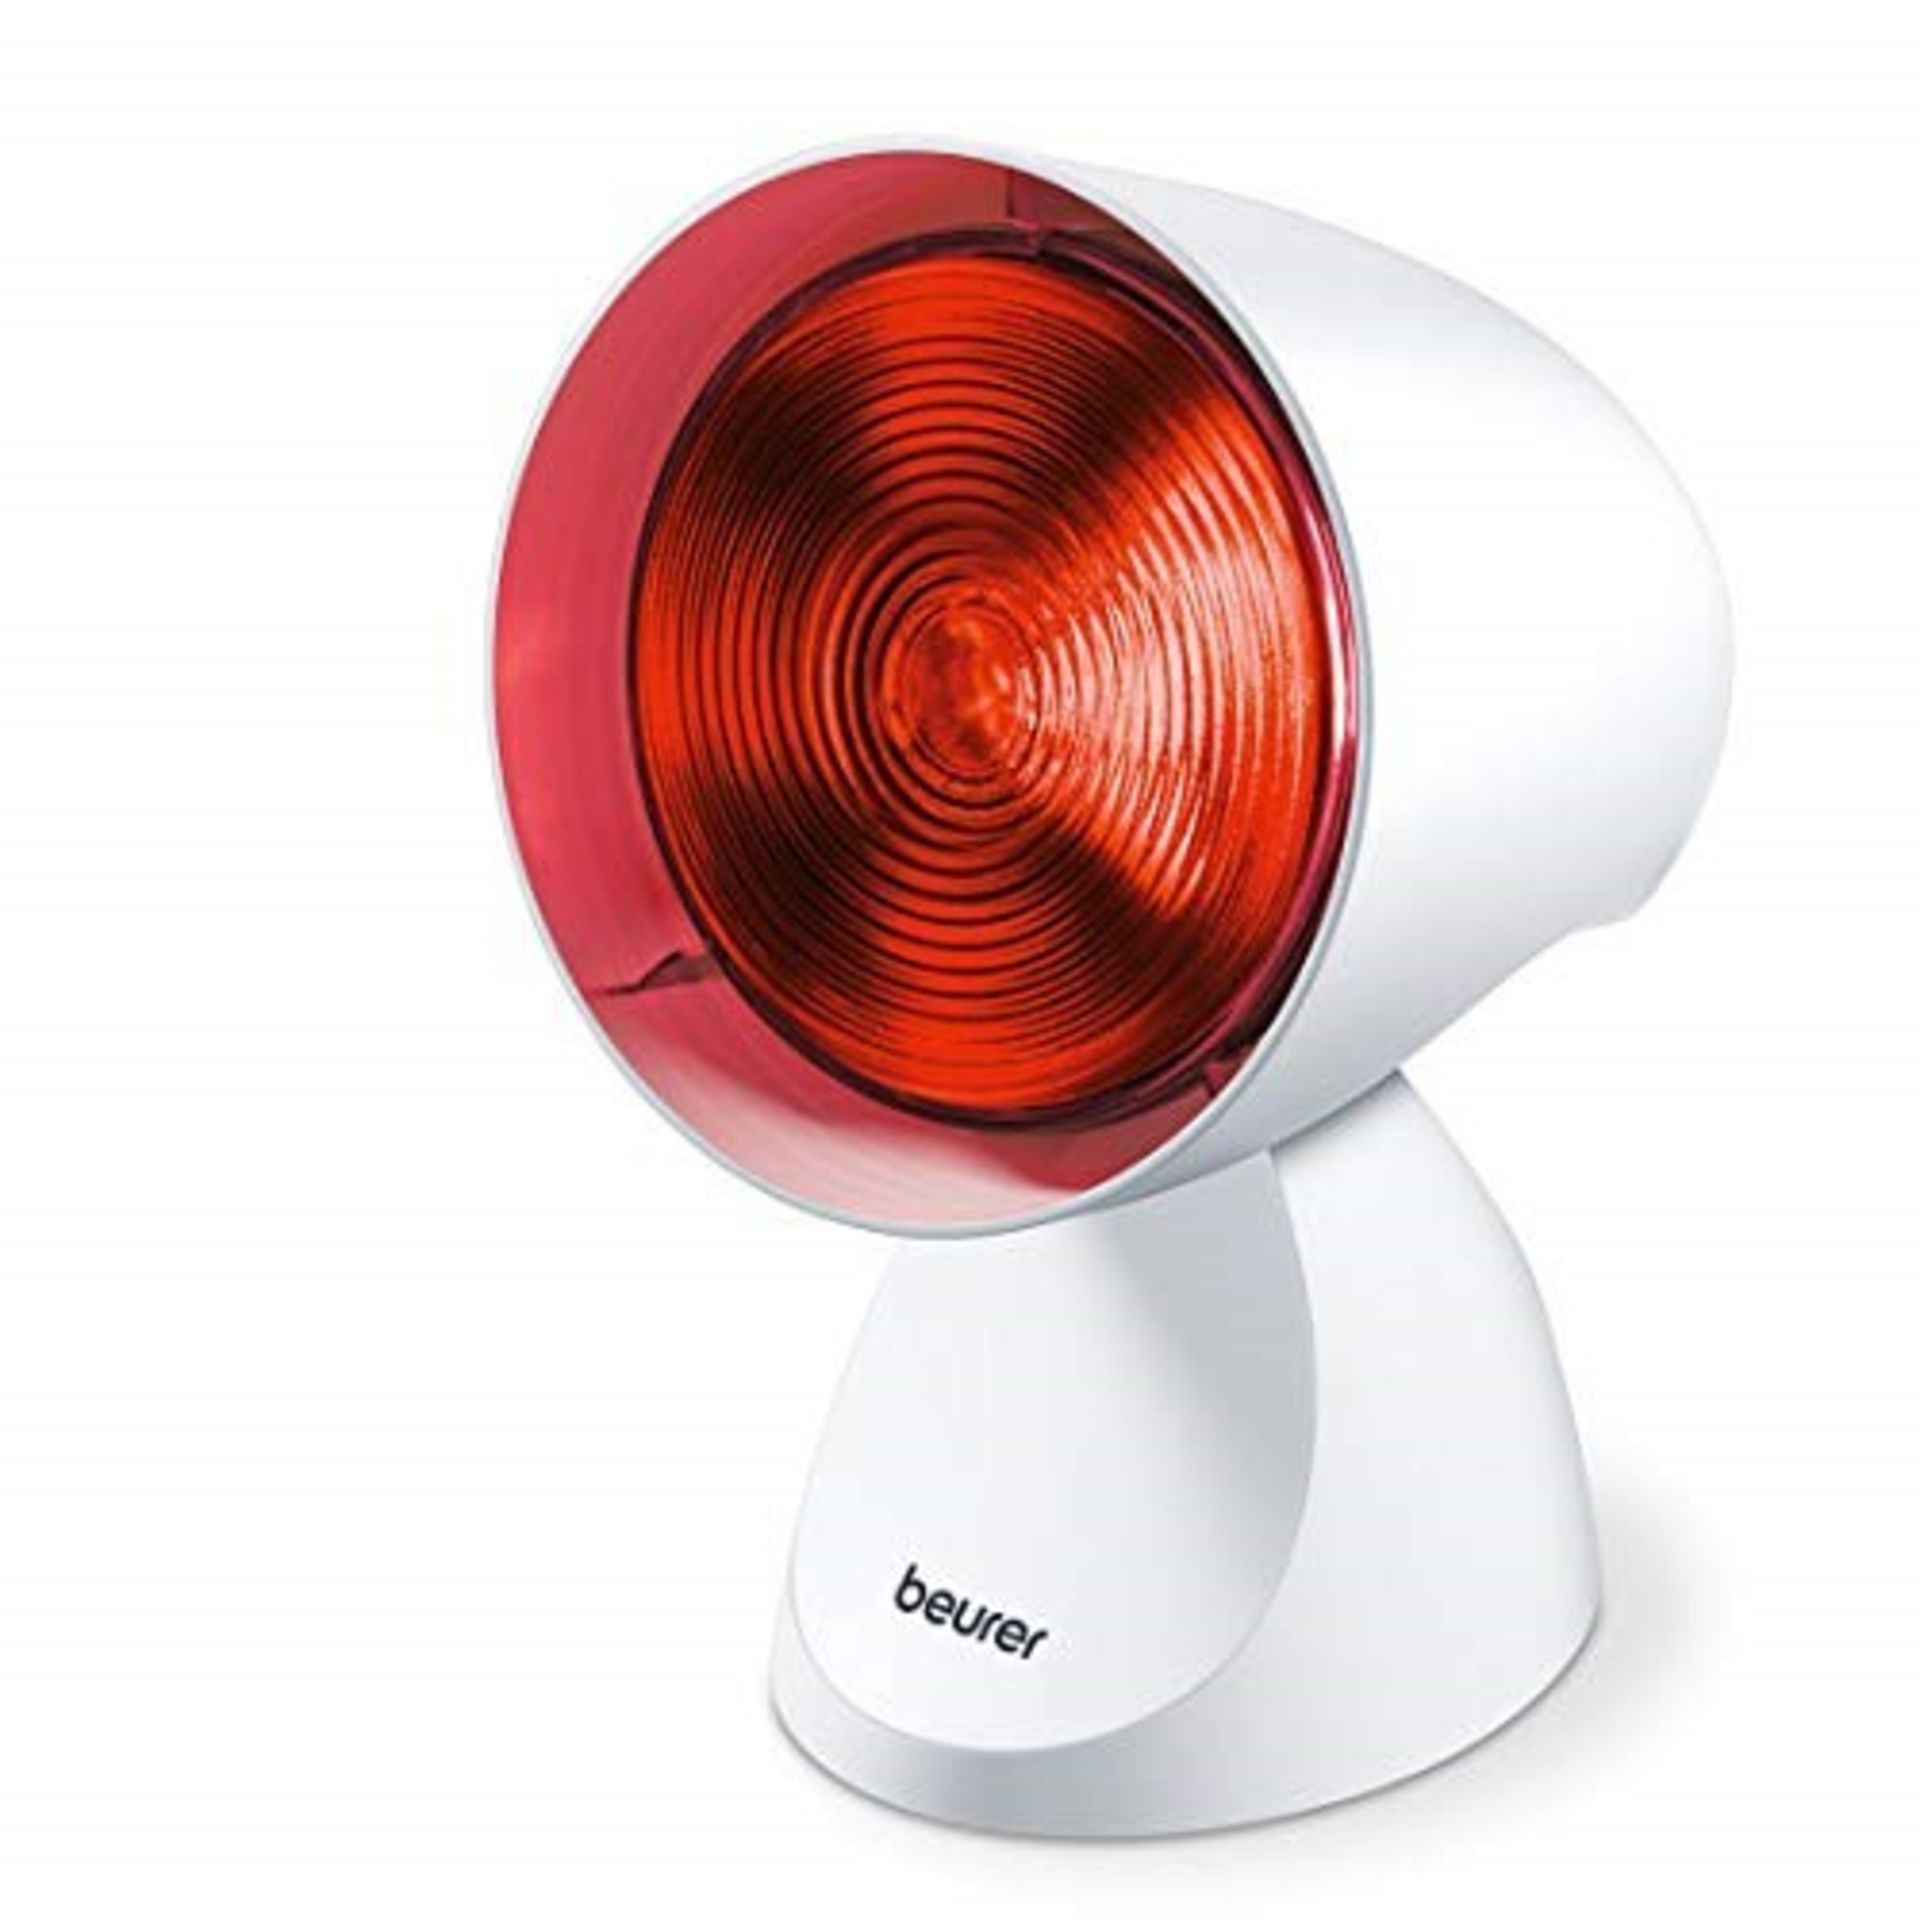 B�e�u�r�e�r� �I�L�2�1� �I�n�f�r�a�r�e�d� �H�e�a�t� �L�a�m�p� �|� �W�a�r�m� �a�n�d� �s�o�o�t�h�i�n�g�